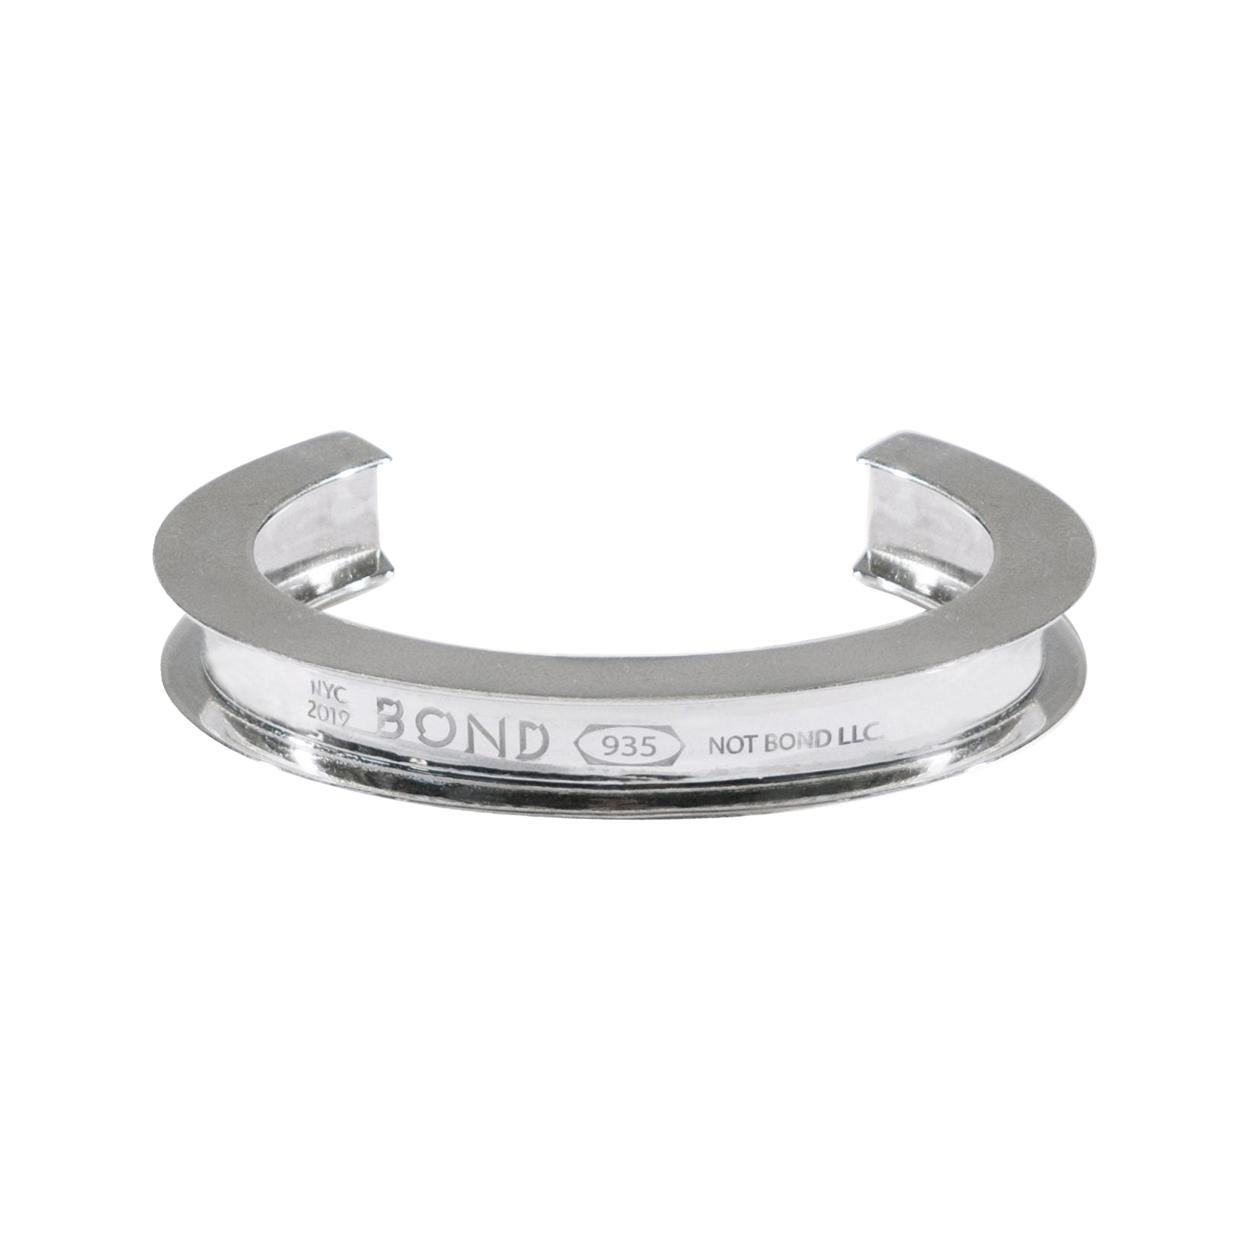 Beam Cuff Bracelet - 935 Silver